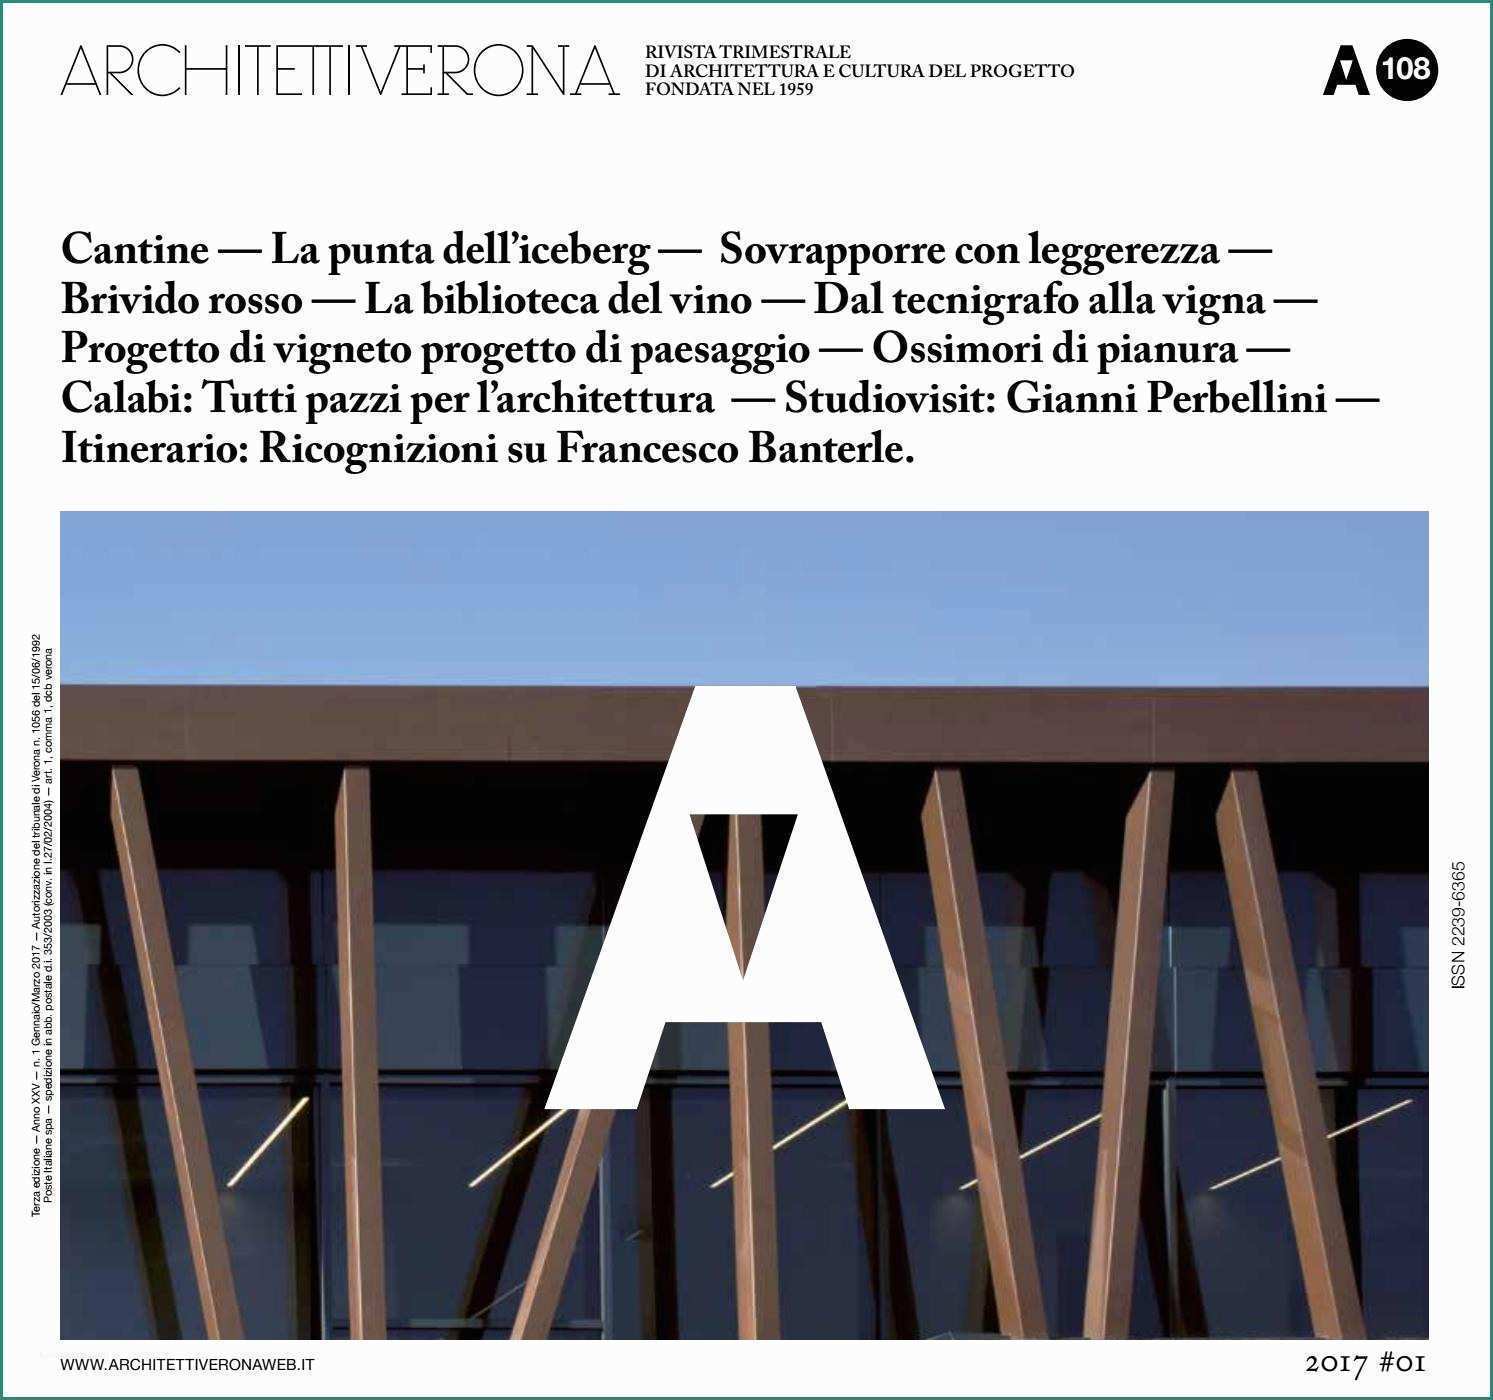 Coperture Scorrevoli In Policarbonato E Architettiverona 108 by Architettiverona issuu